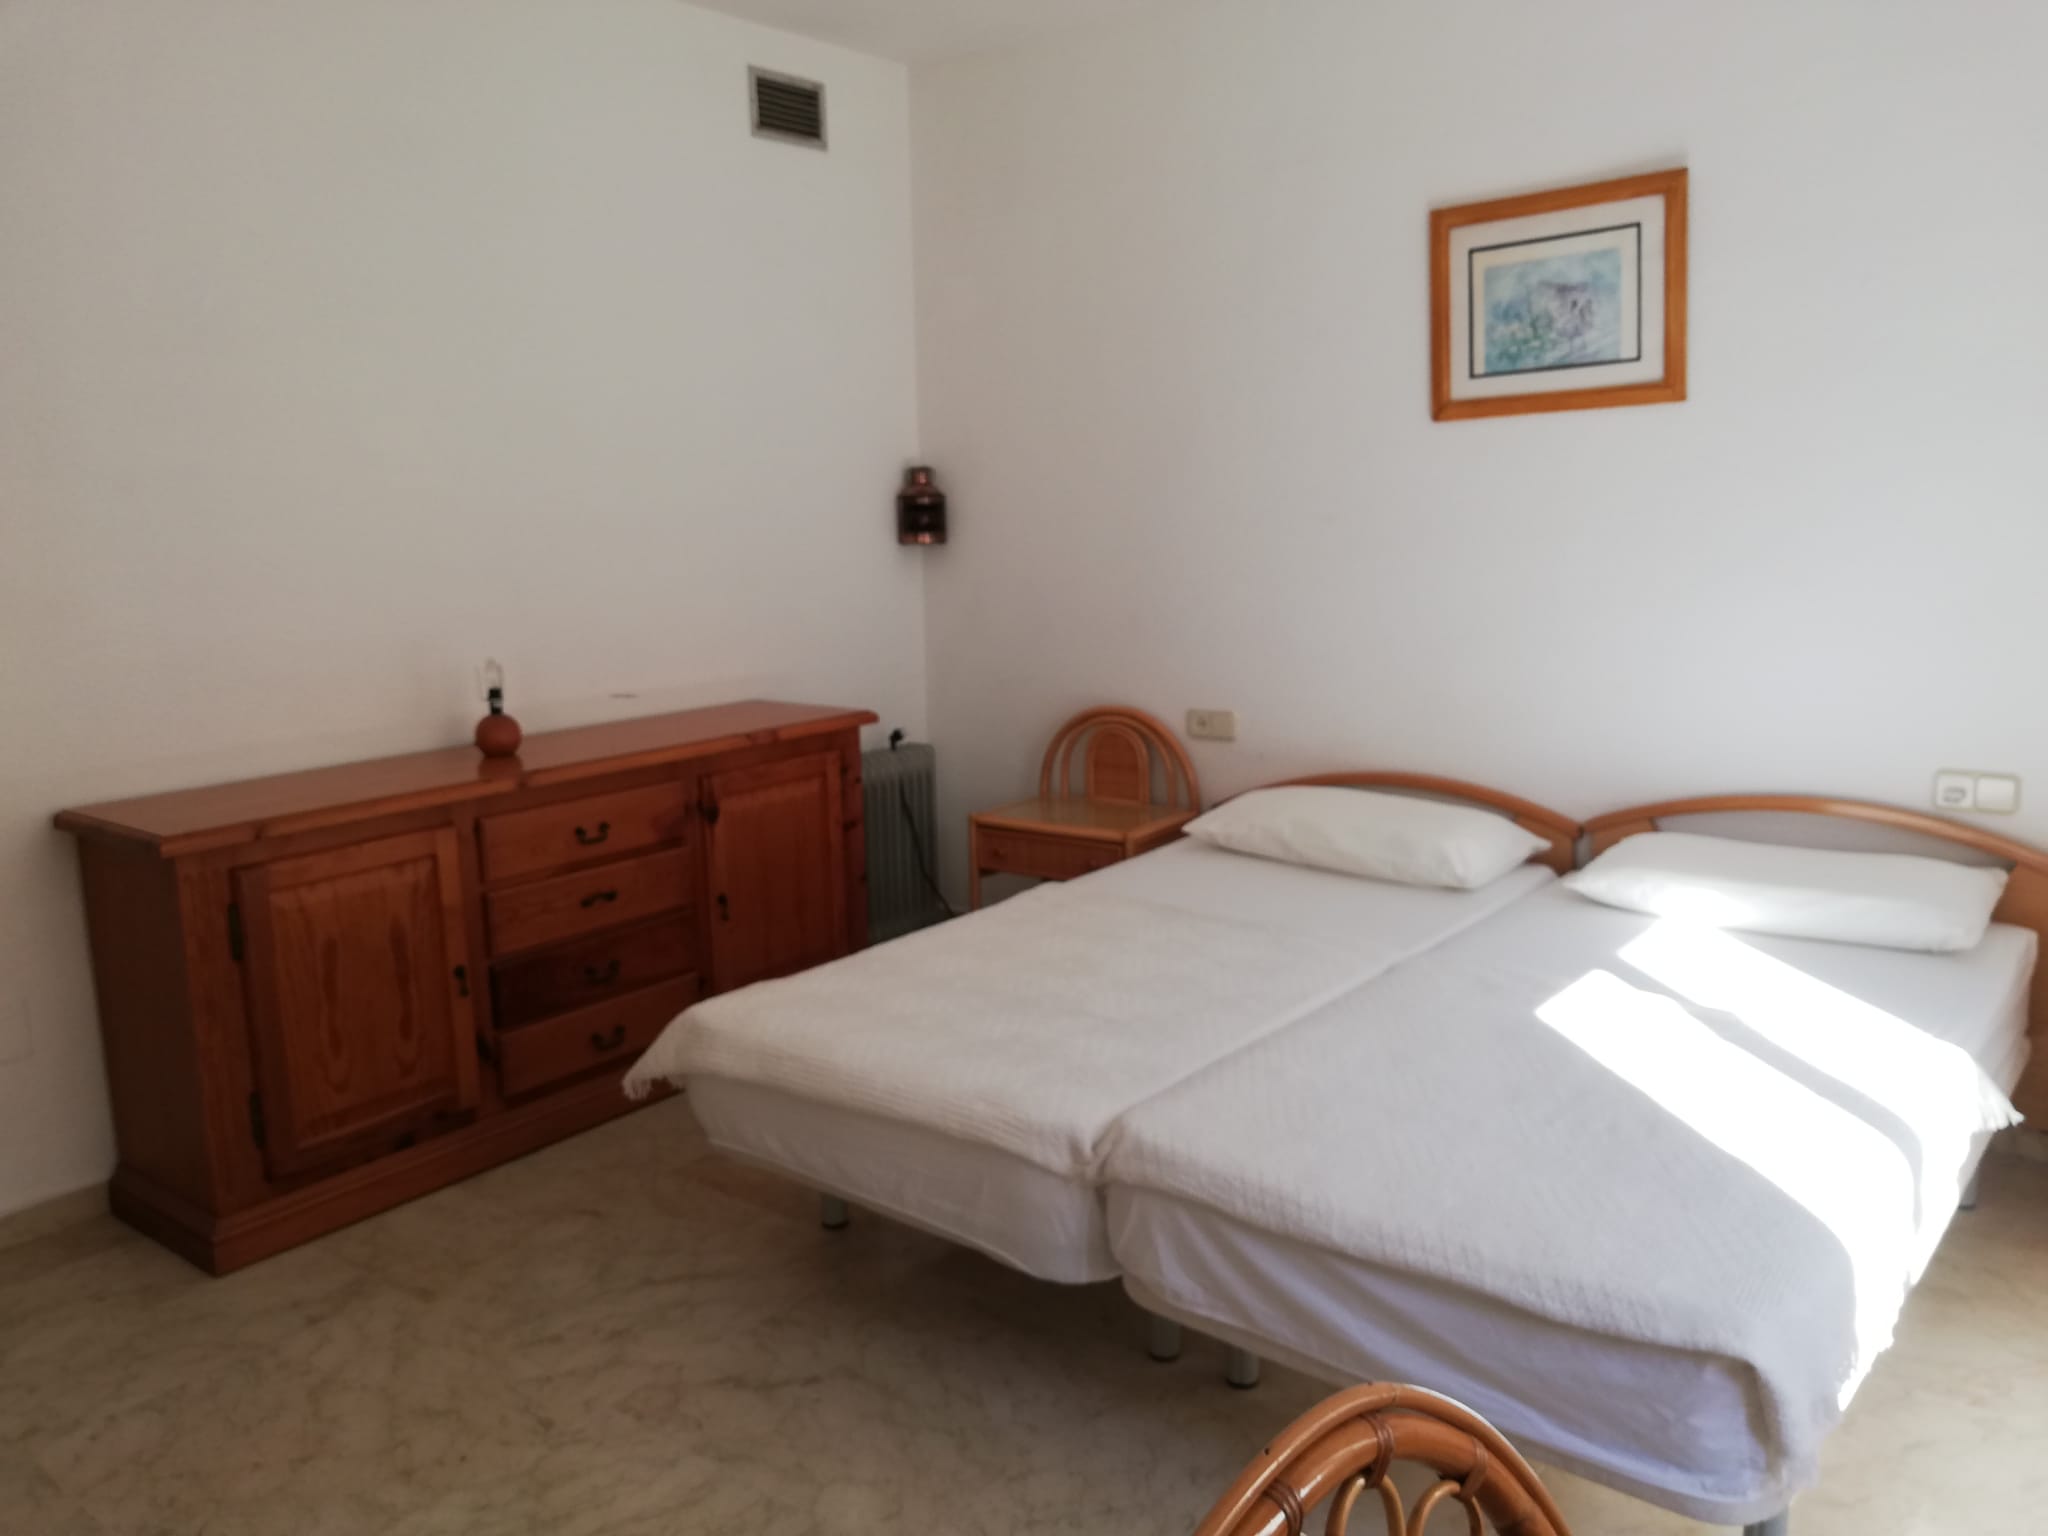 Apartamento de 2 dormitorios en primera línea de mar en Estepona con vistas a Gibraltar - mibgroup.es